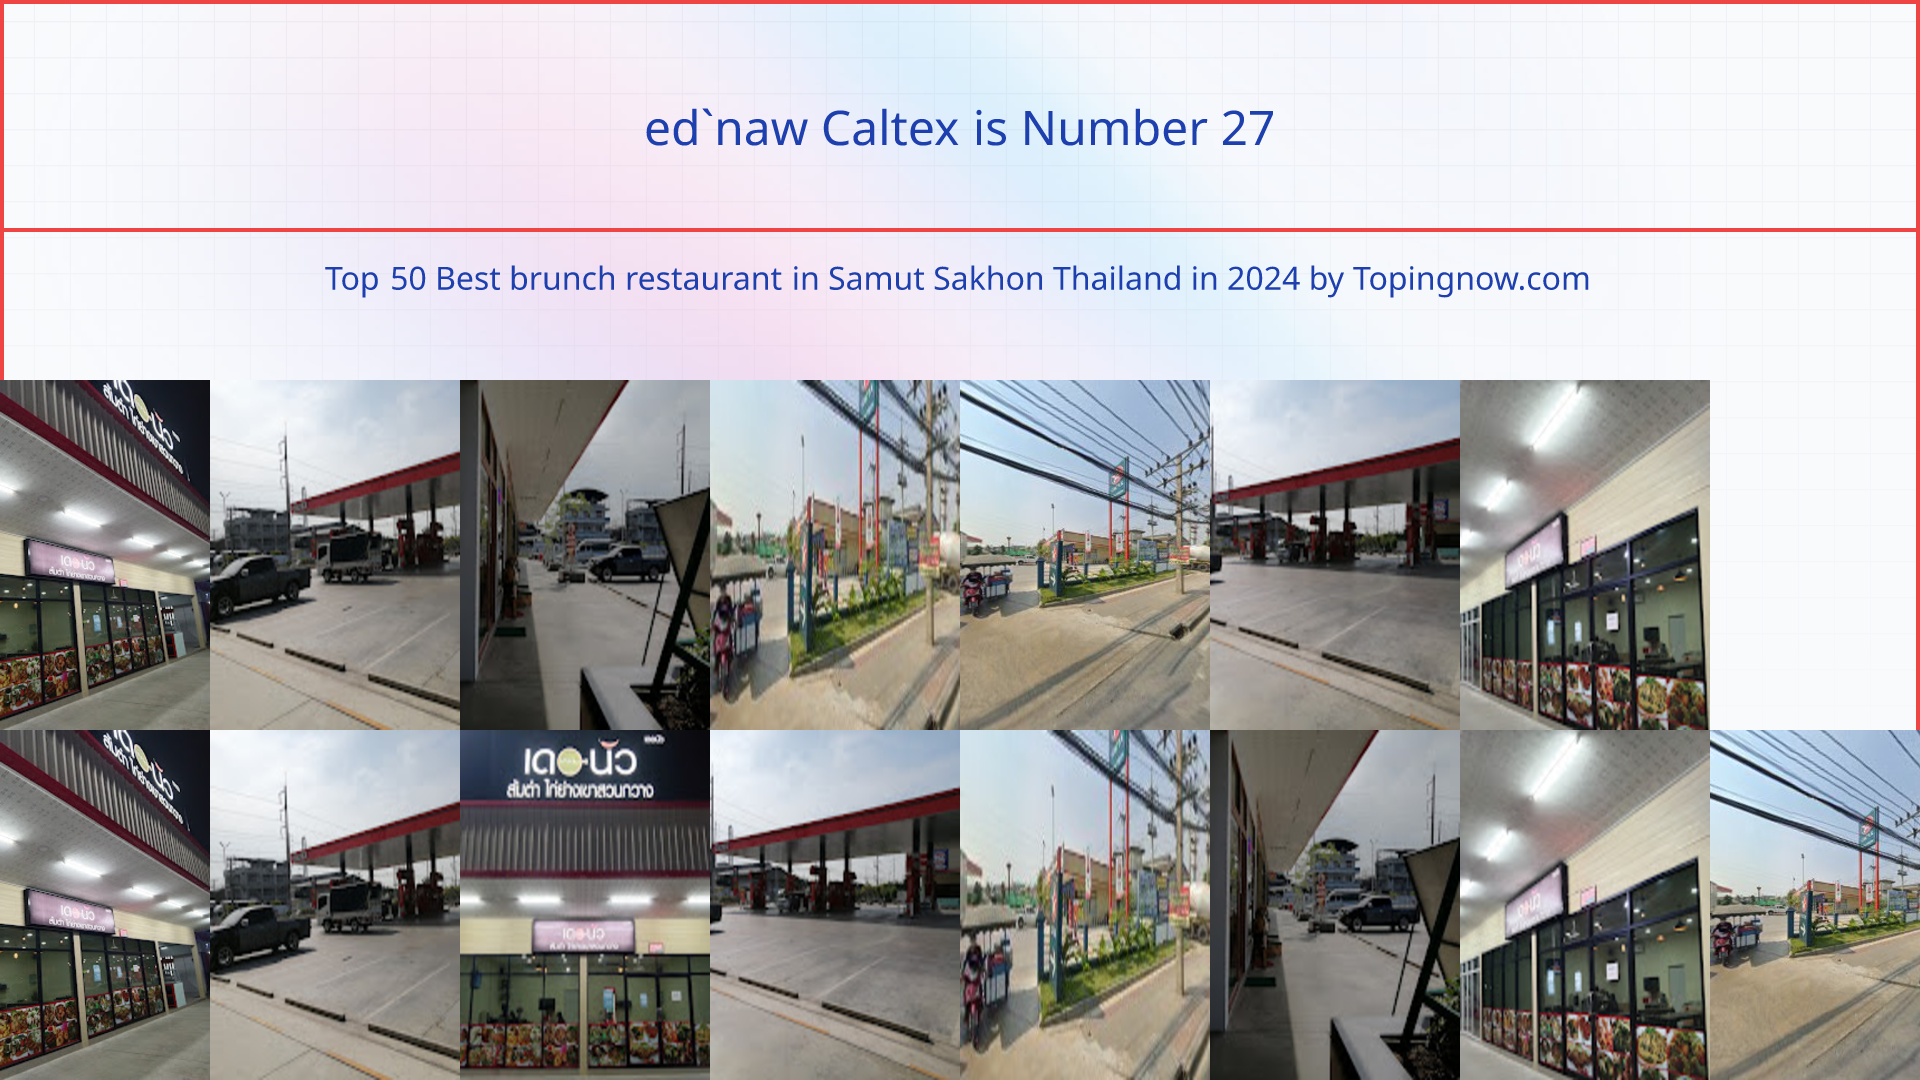 ed`naw Caltex: Top 50 Best brunch restaurant in Samut Sakhon Thailand in 2024